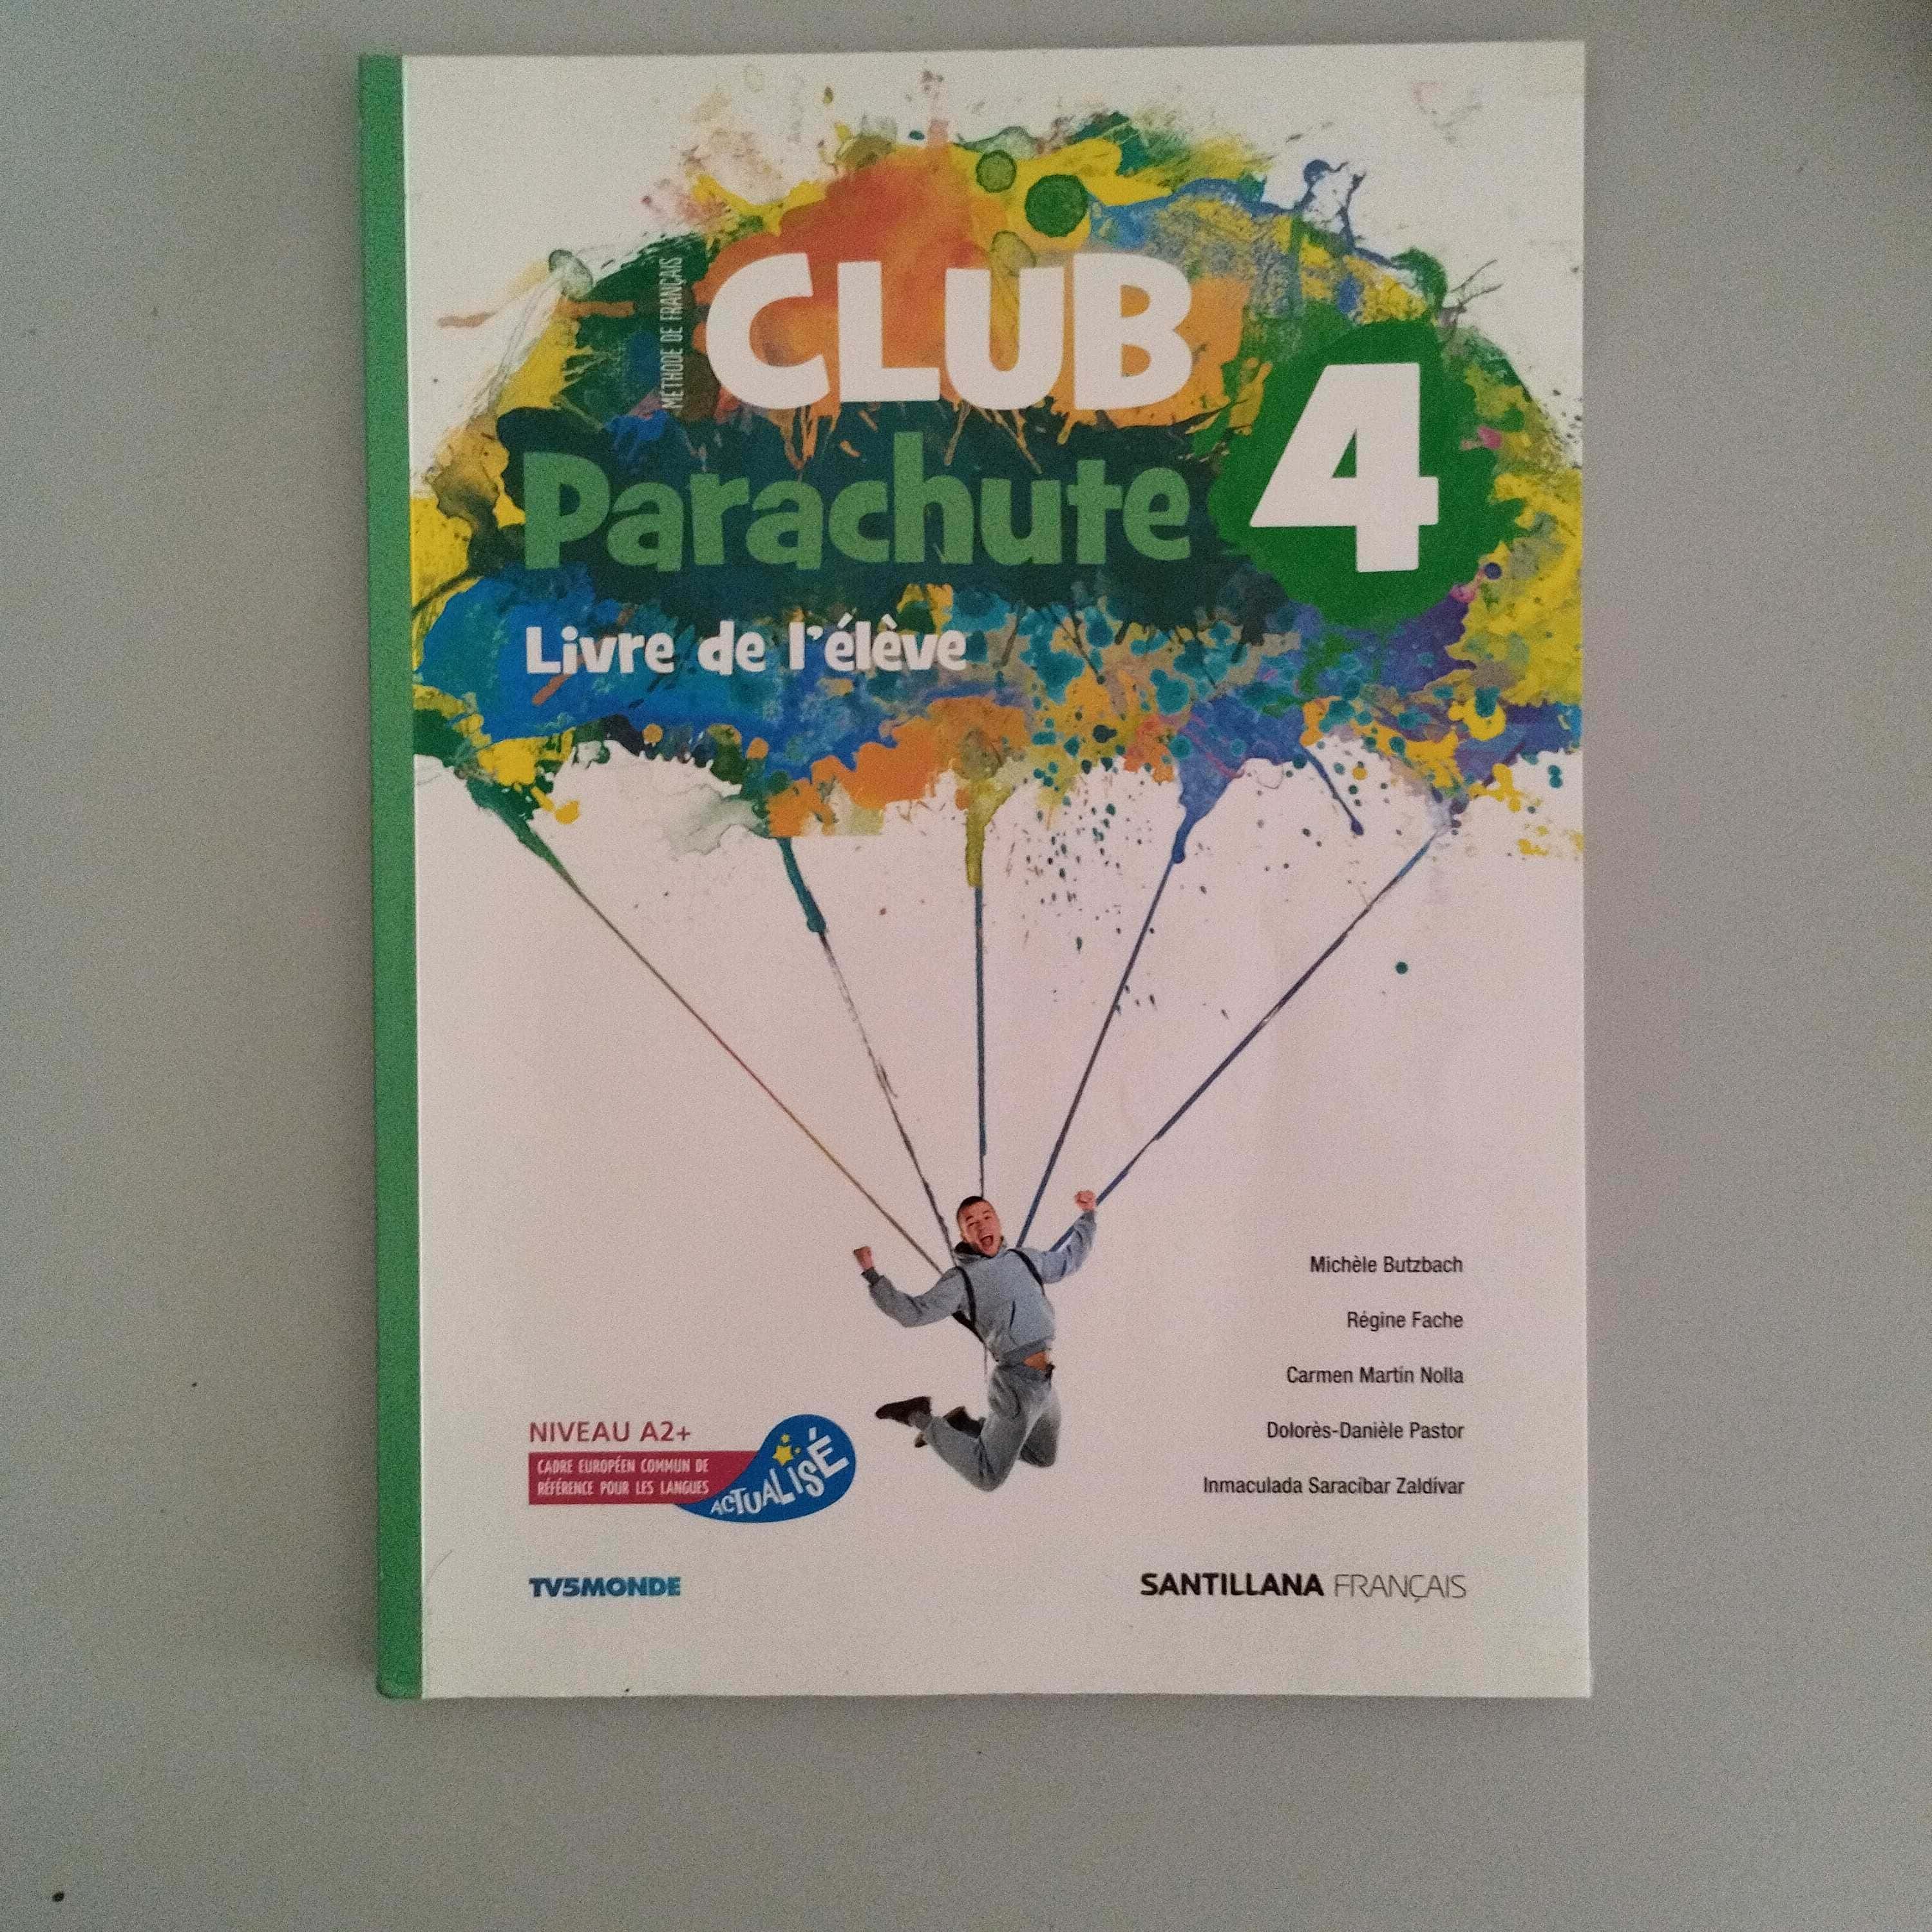 Libro de segunda mano: Club Parachute 4, livre de lélève